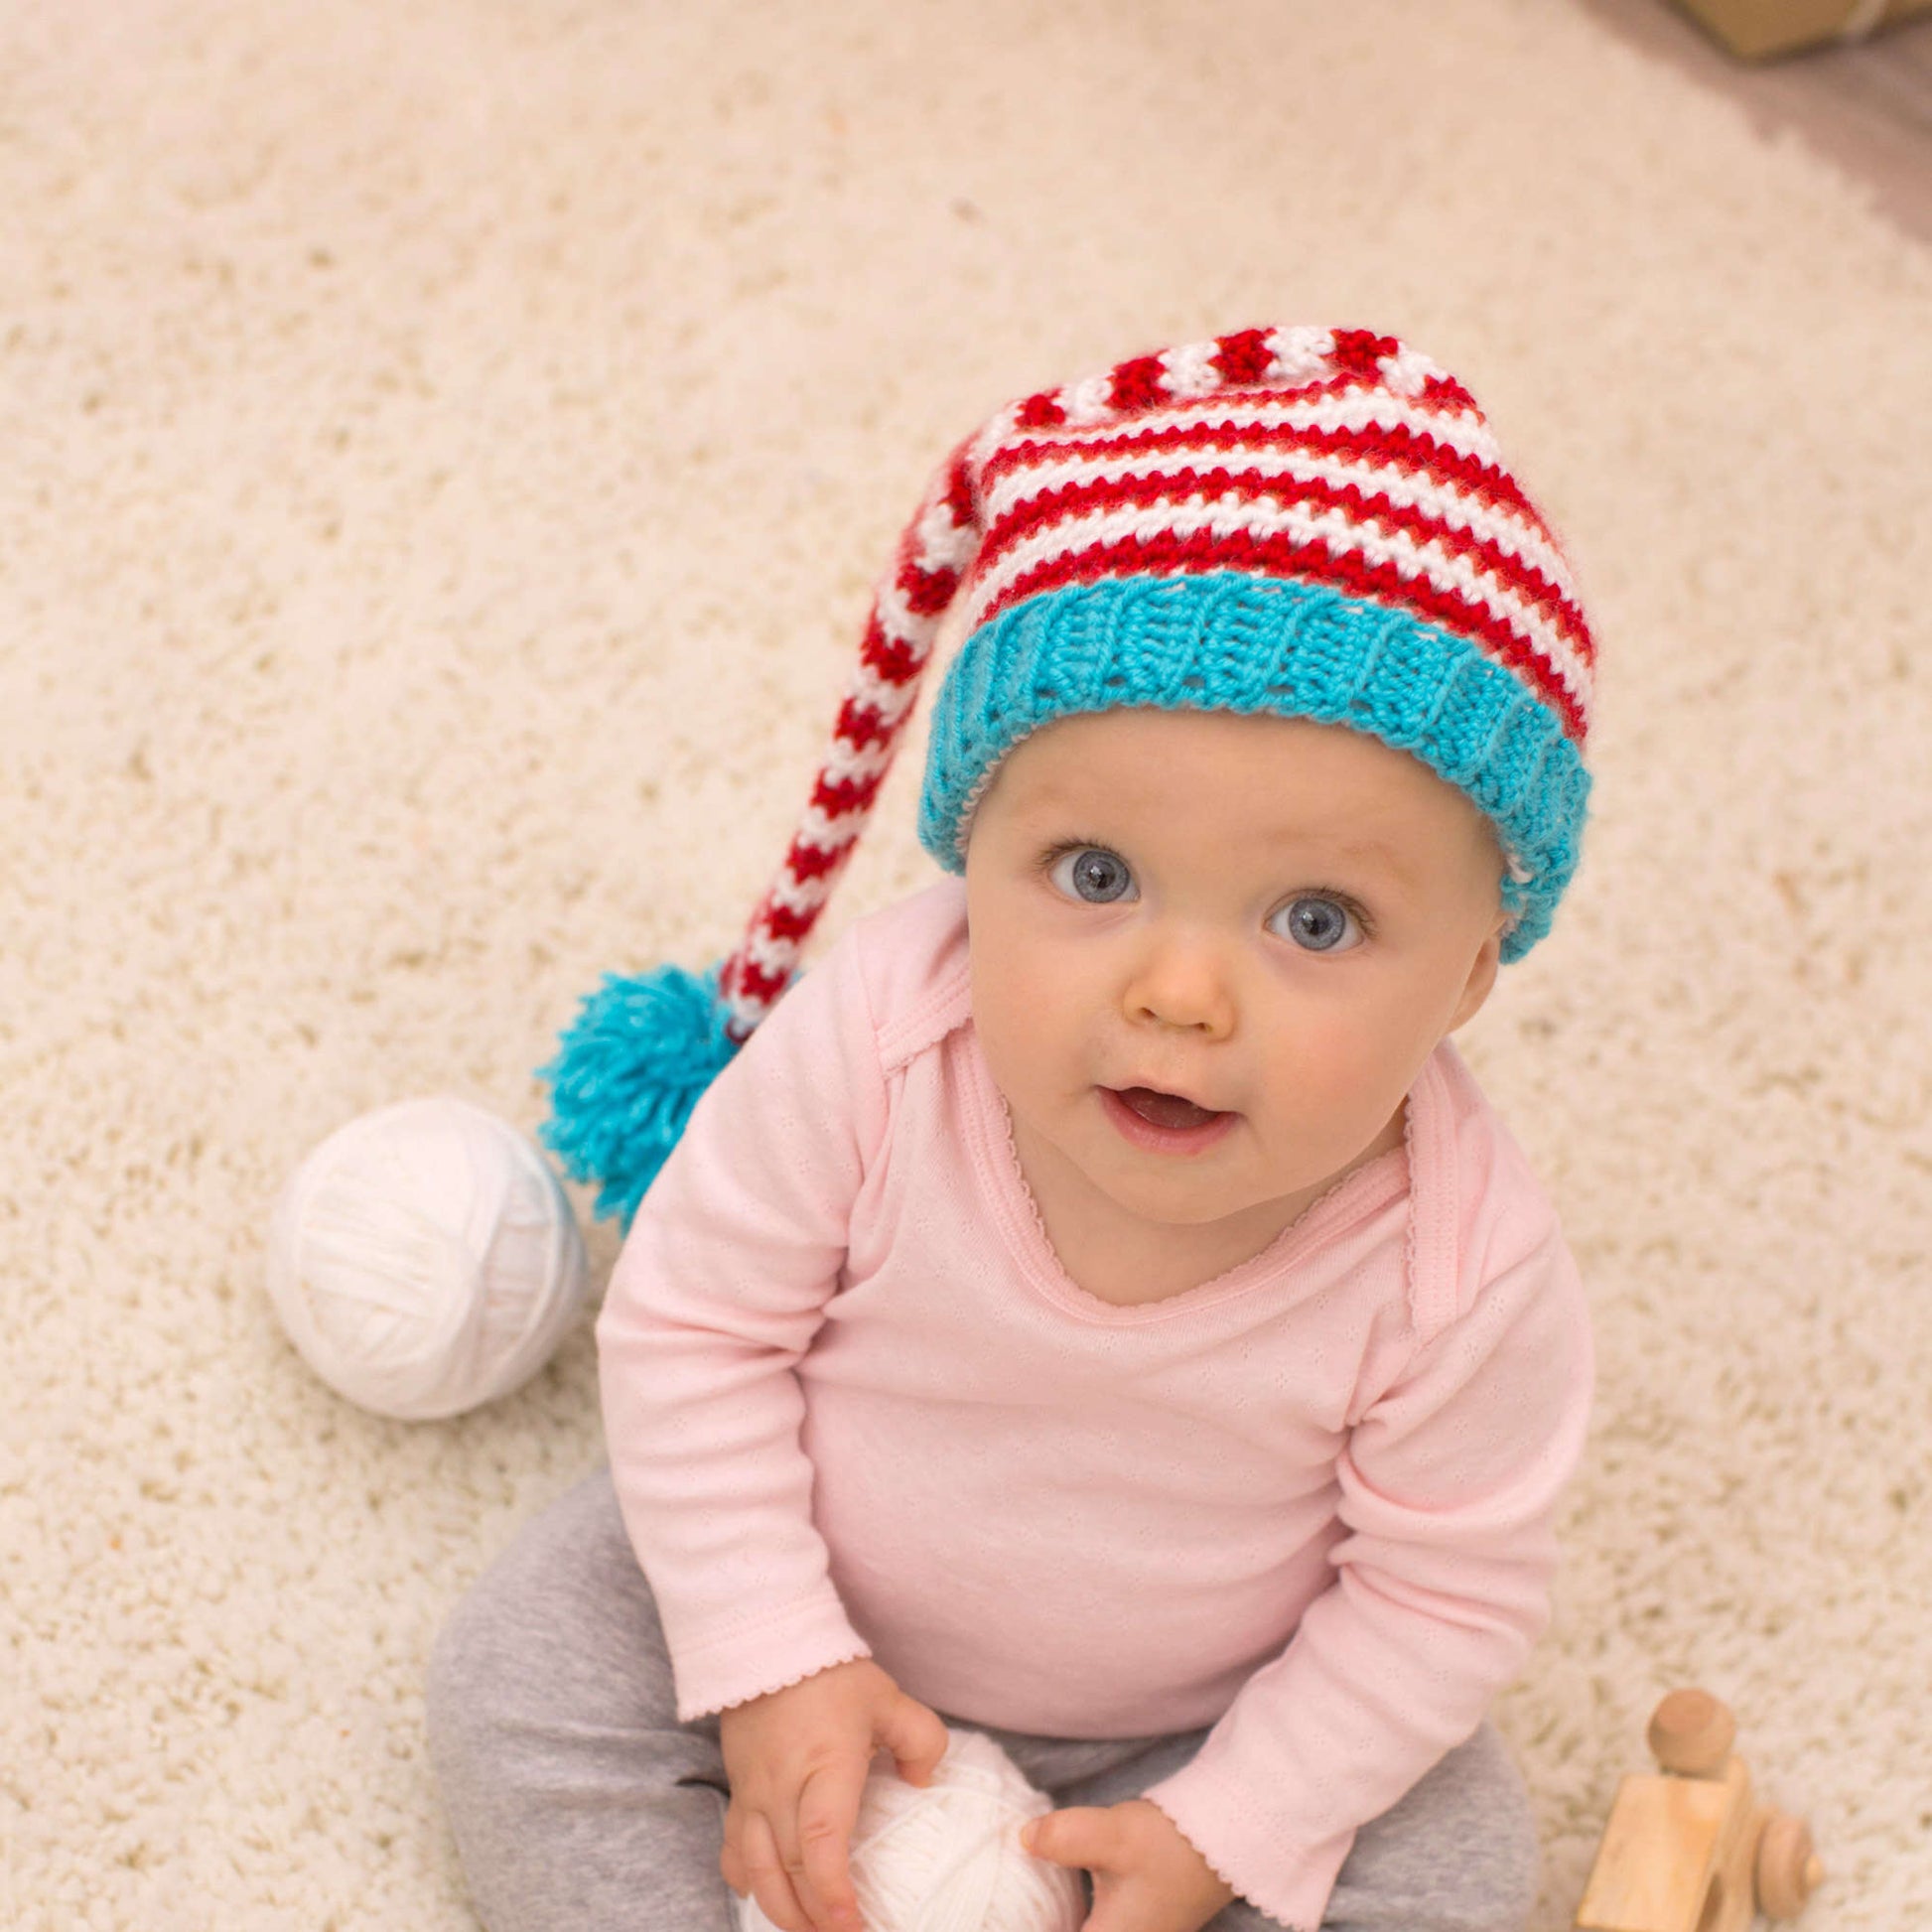 Free Red Heart Crochet Baby Elf Hat Pattern